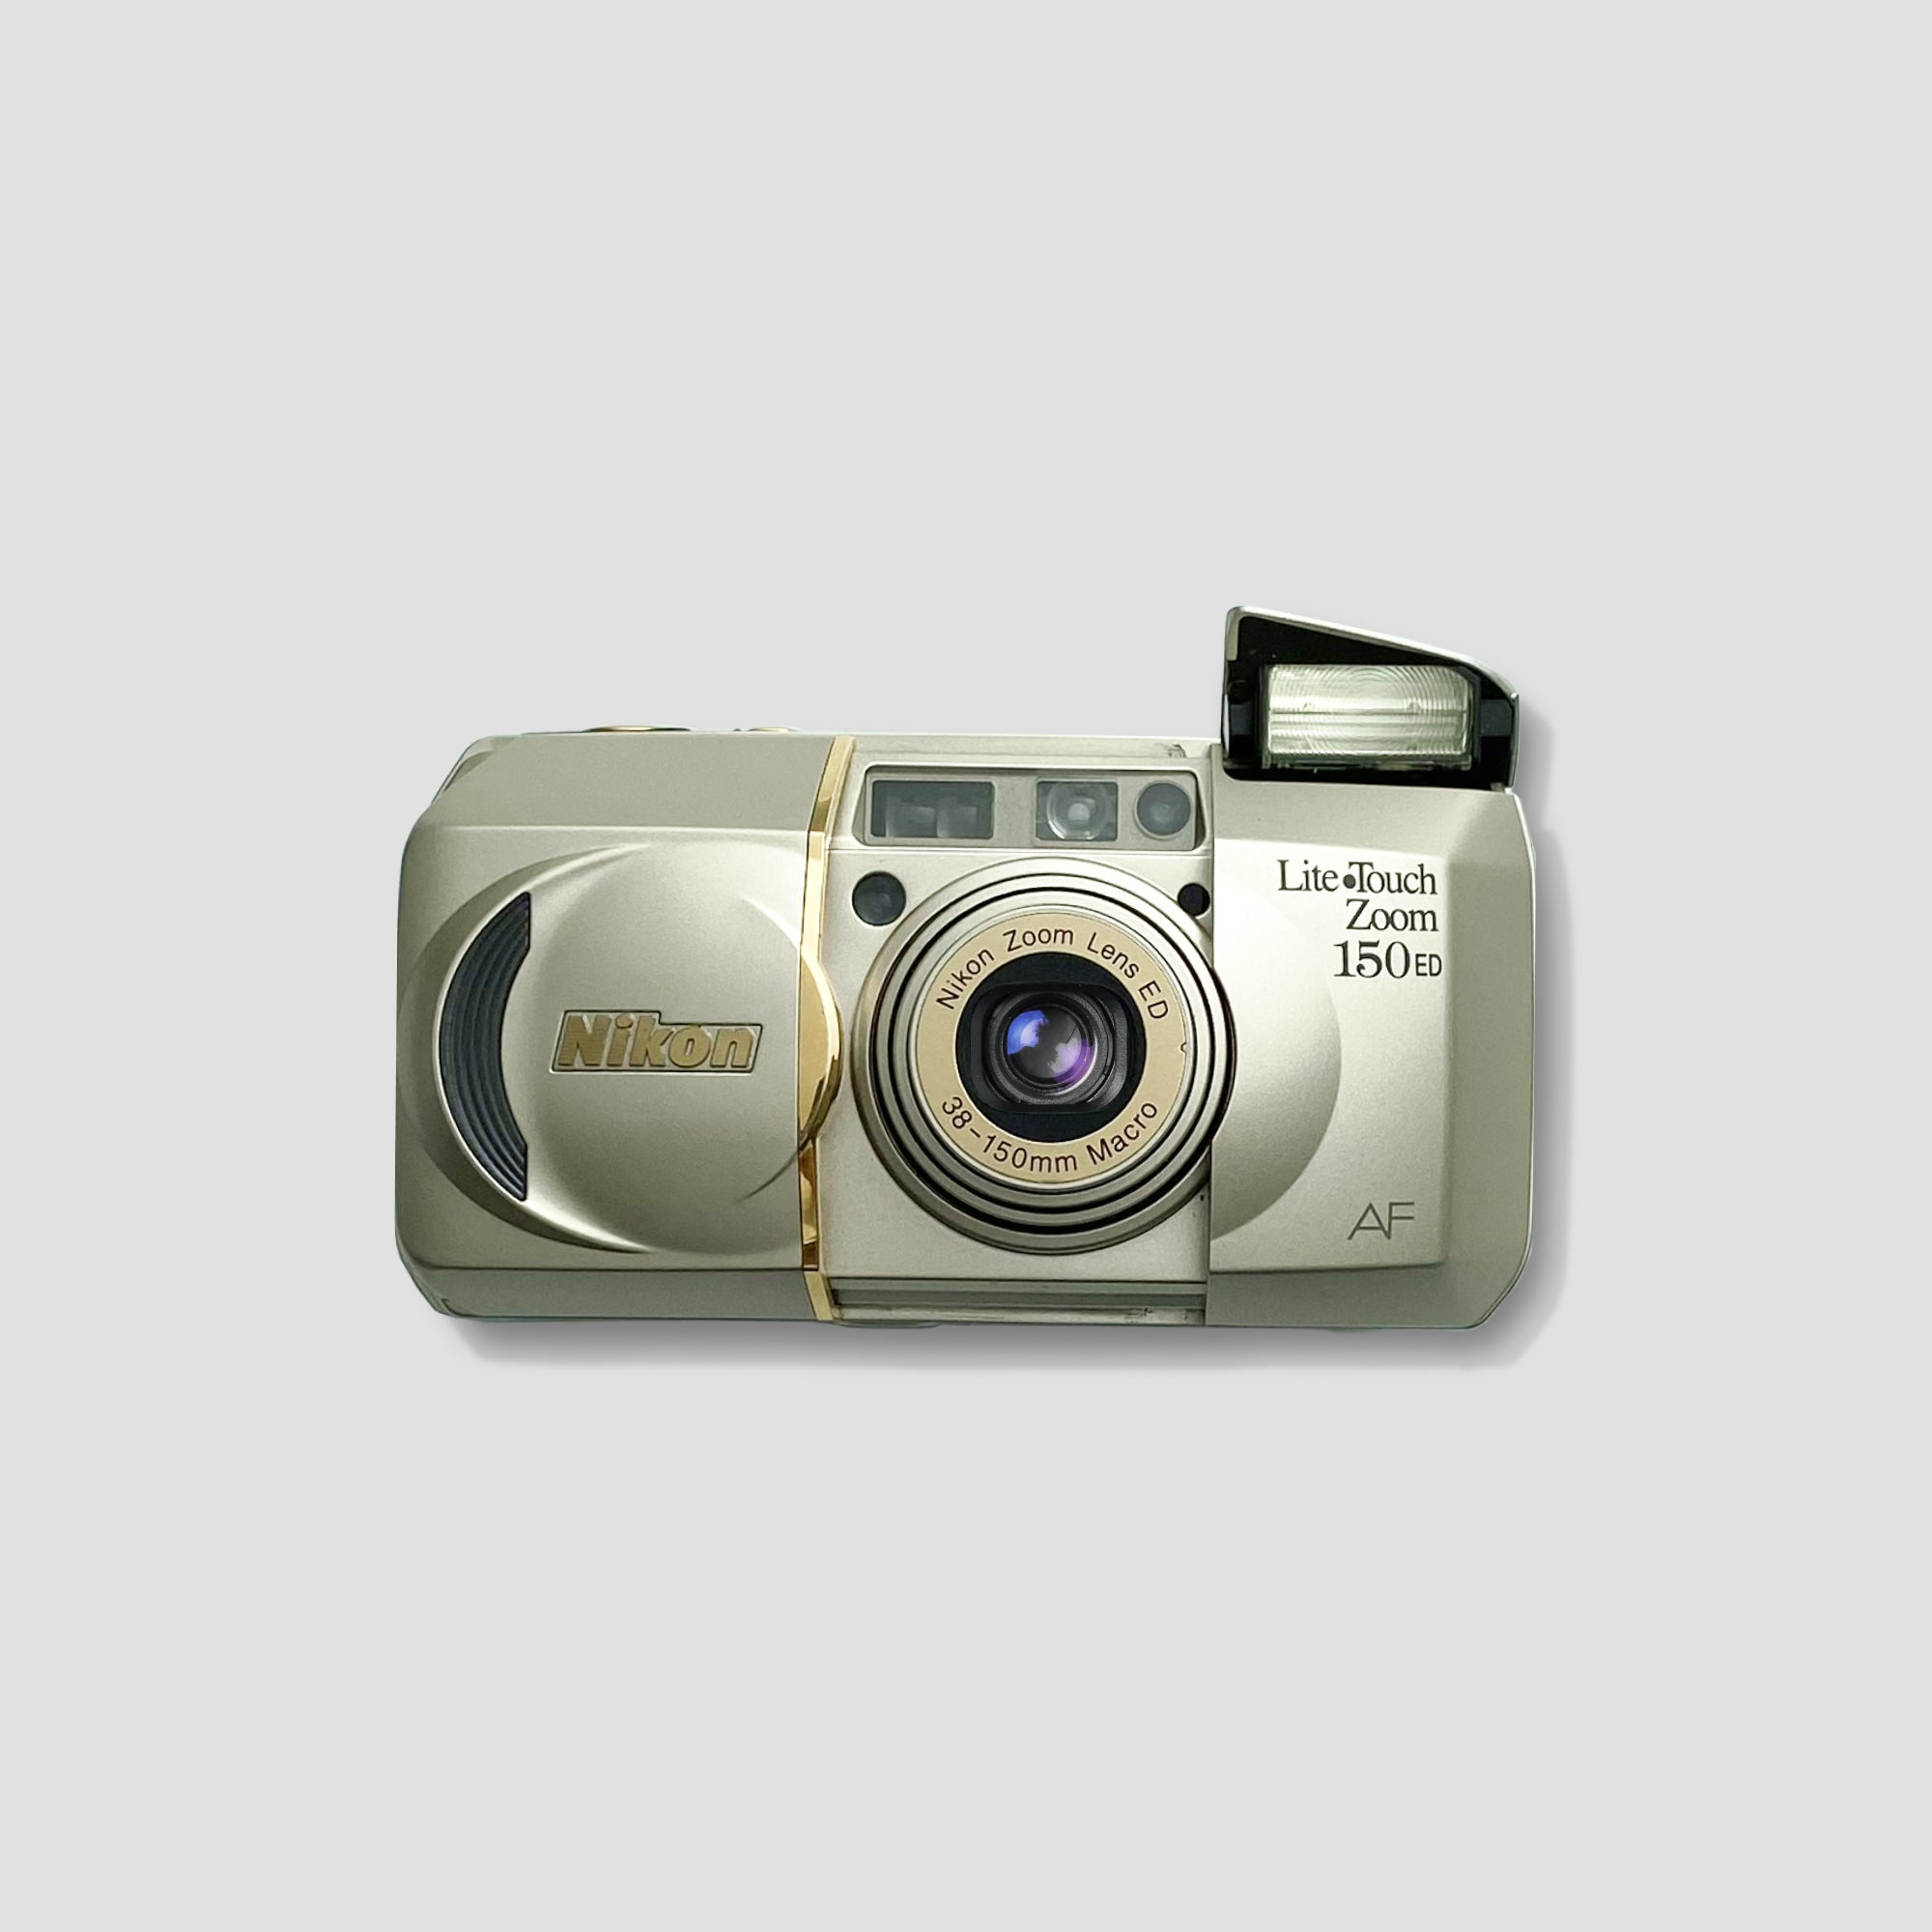 Nikon Lite Touch Zoom 150ED